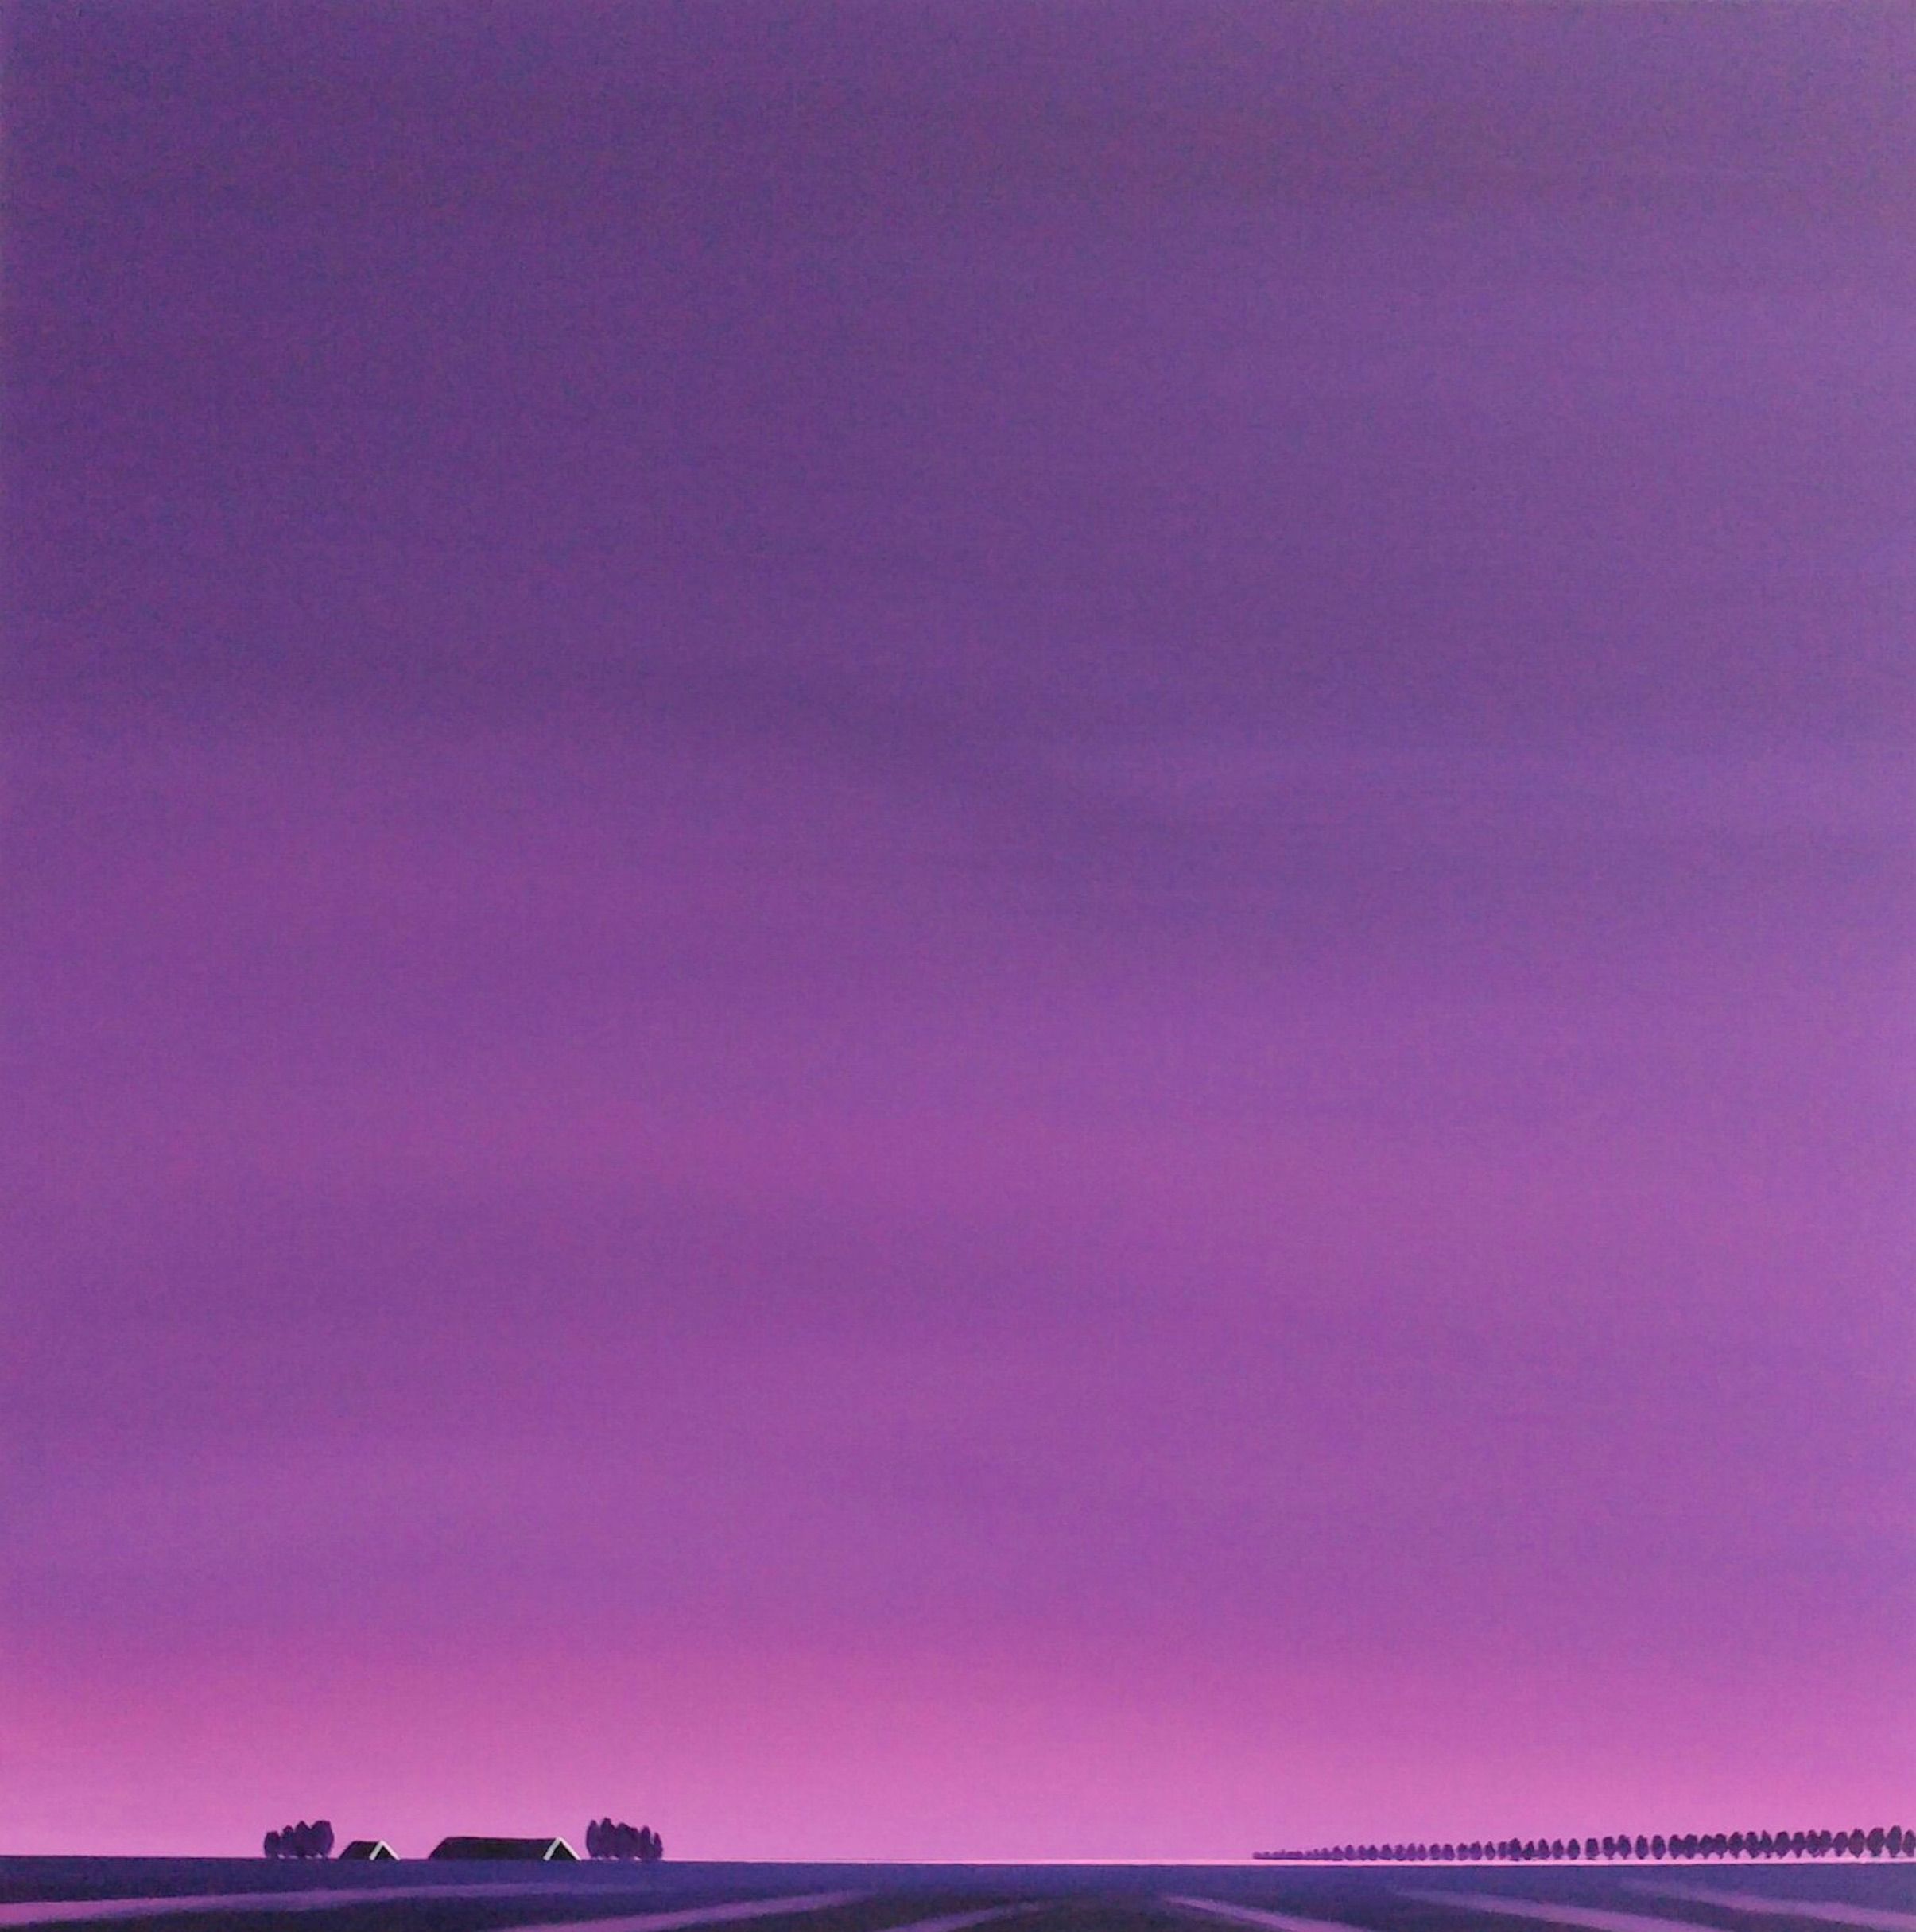 Nelly van Nieuwenhuijzen's "Dageraad, goodbye to the night" Bild zeigt eine Landschaft in Zeeland. Der lila Himmel, ein rosa lila Sonnenaufgang, der sich in den Spuren auf dem Land und den dunklen Dächern widerspiegelt, ist intensiv, fast überwältigend